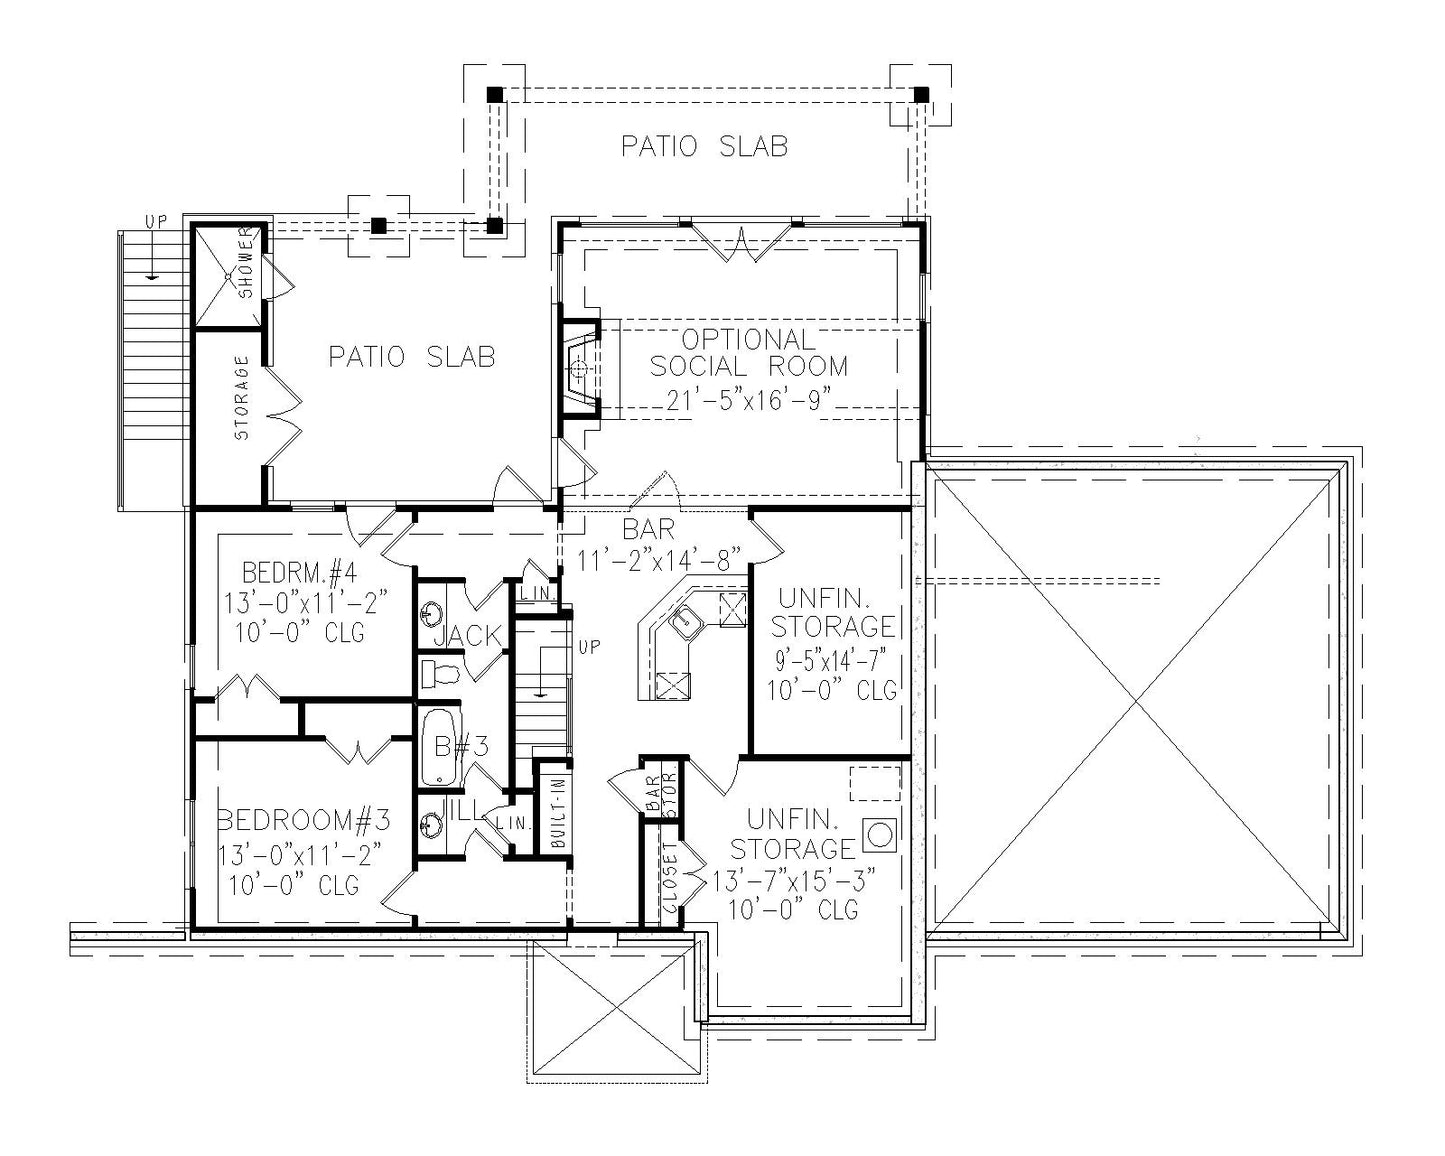 BASEMENT FLOOR PLAN - 22037 Floor_Plan